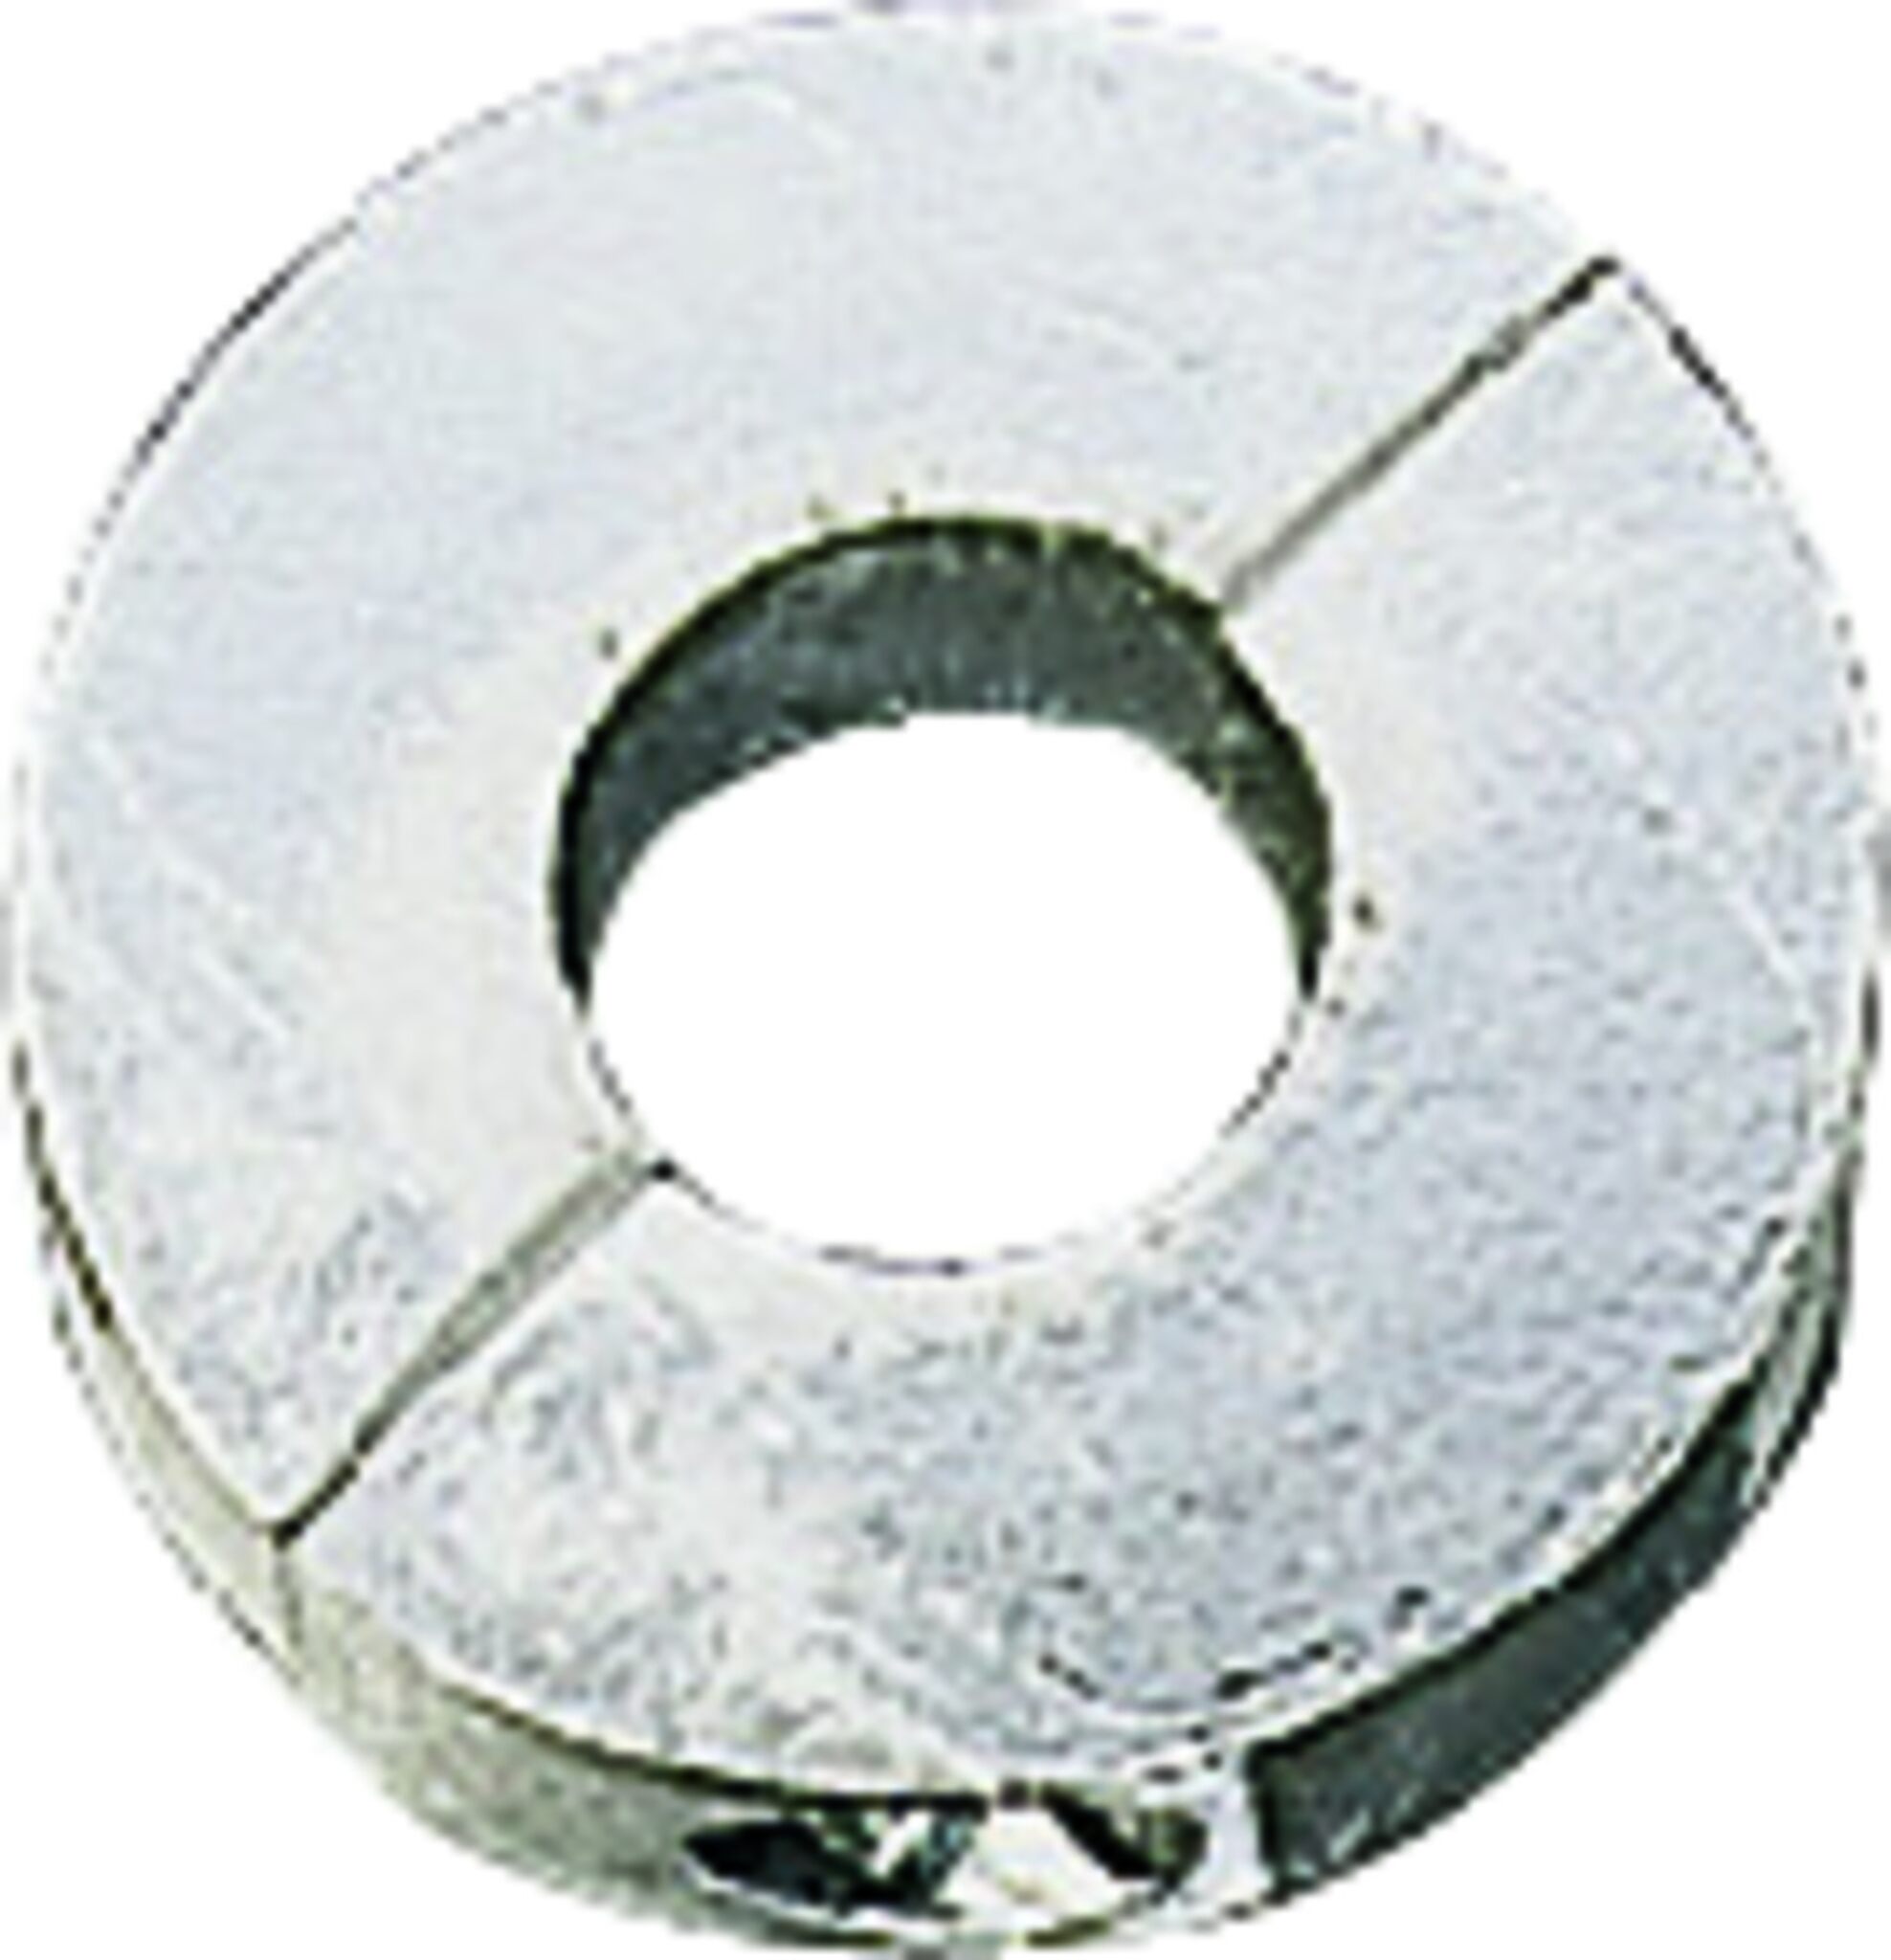 Magnesium-Wellenanode mit kurzer Bauform Ø 40 mm